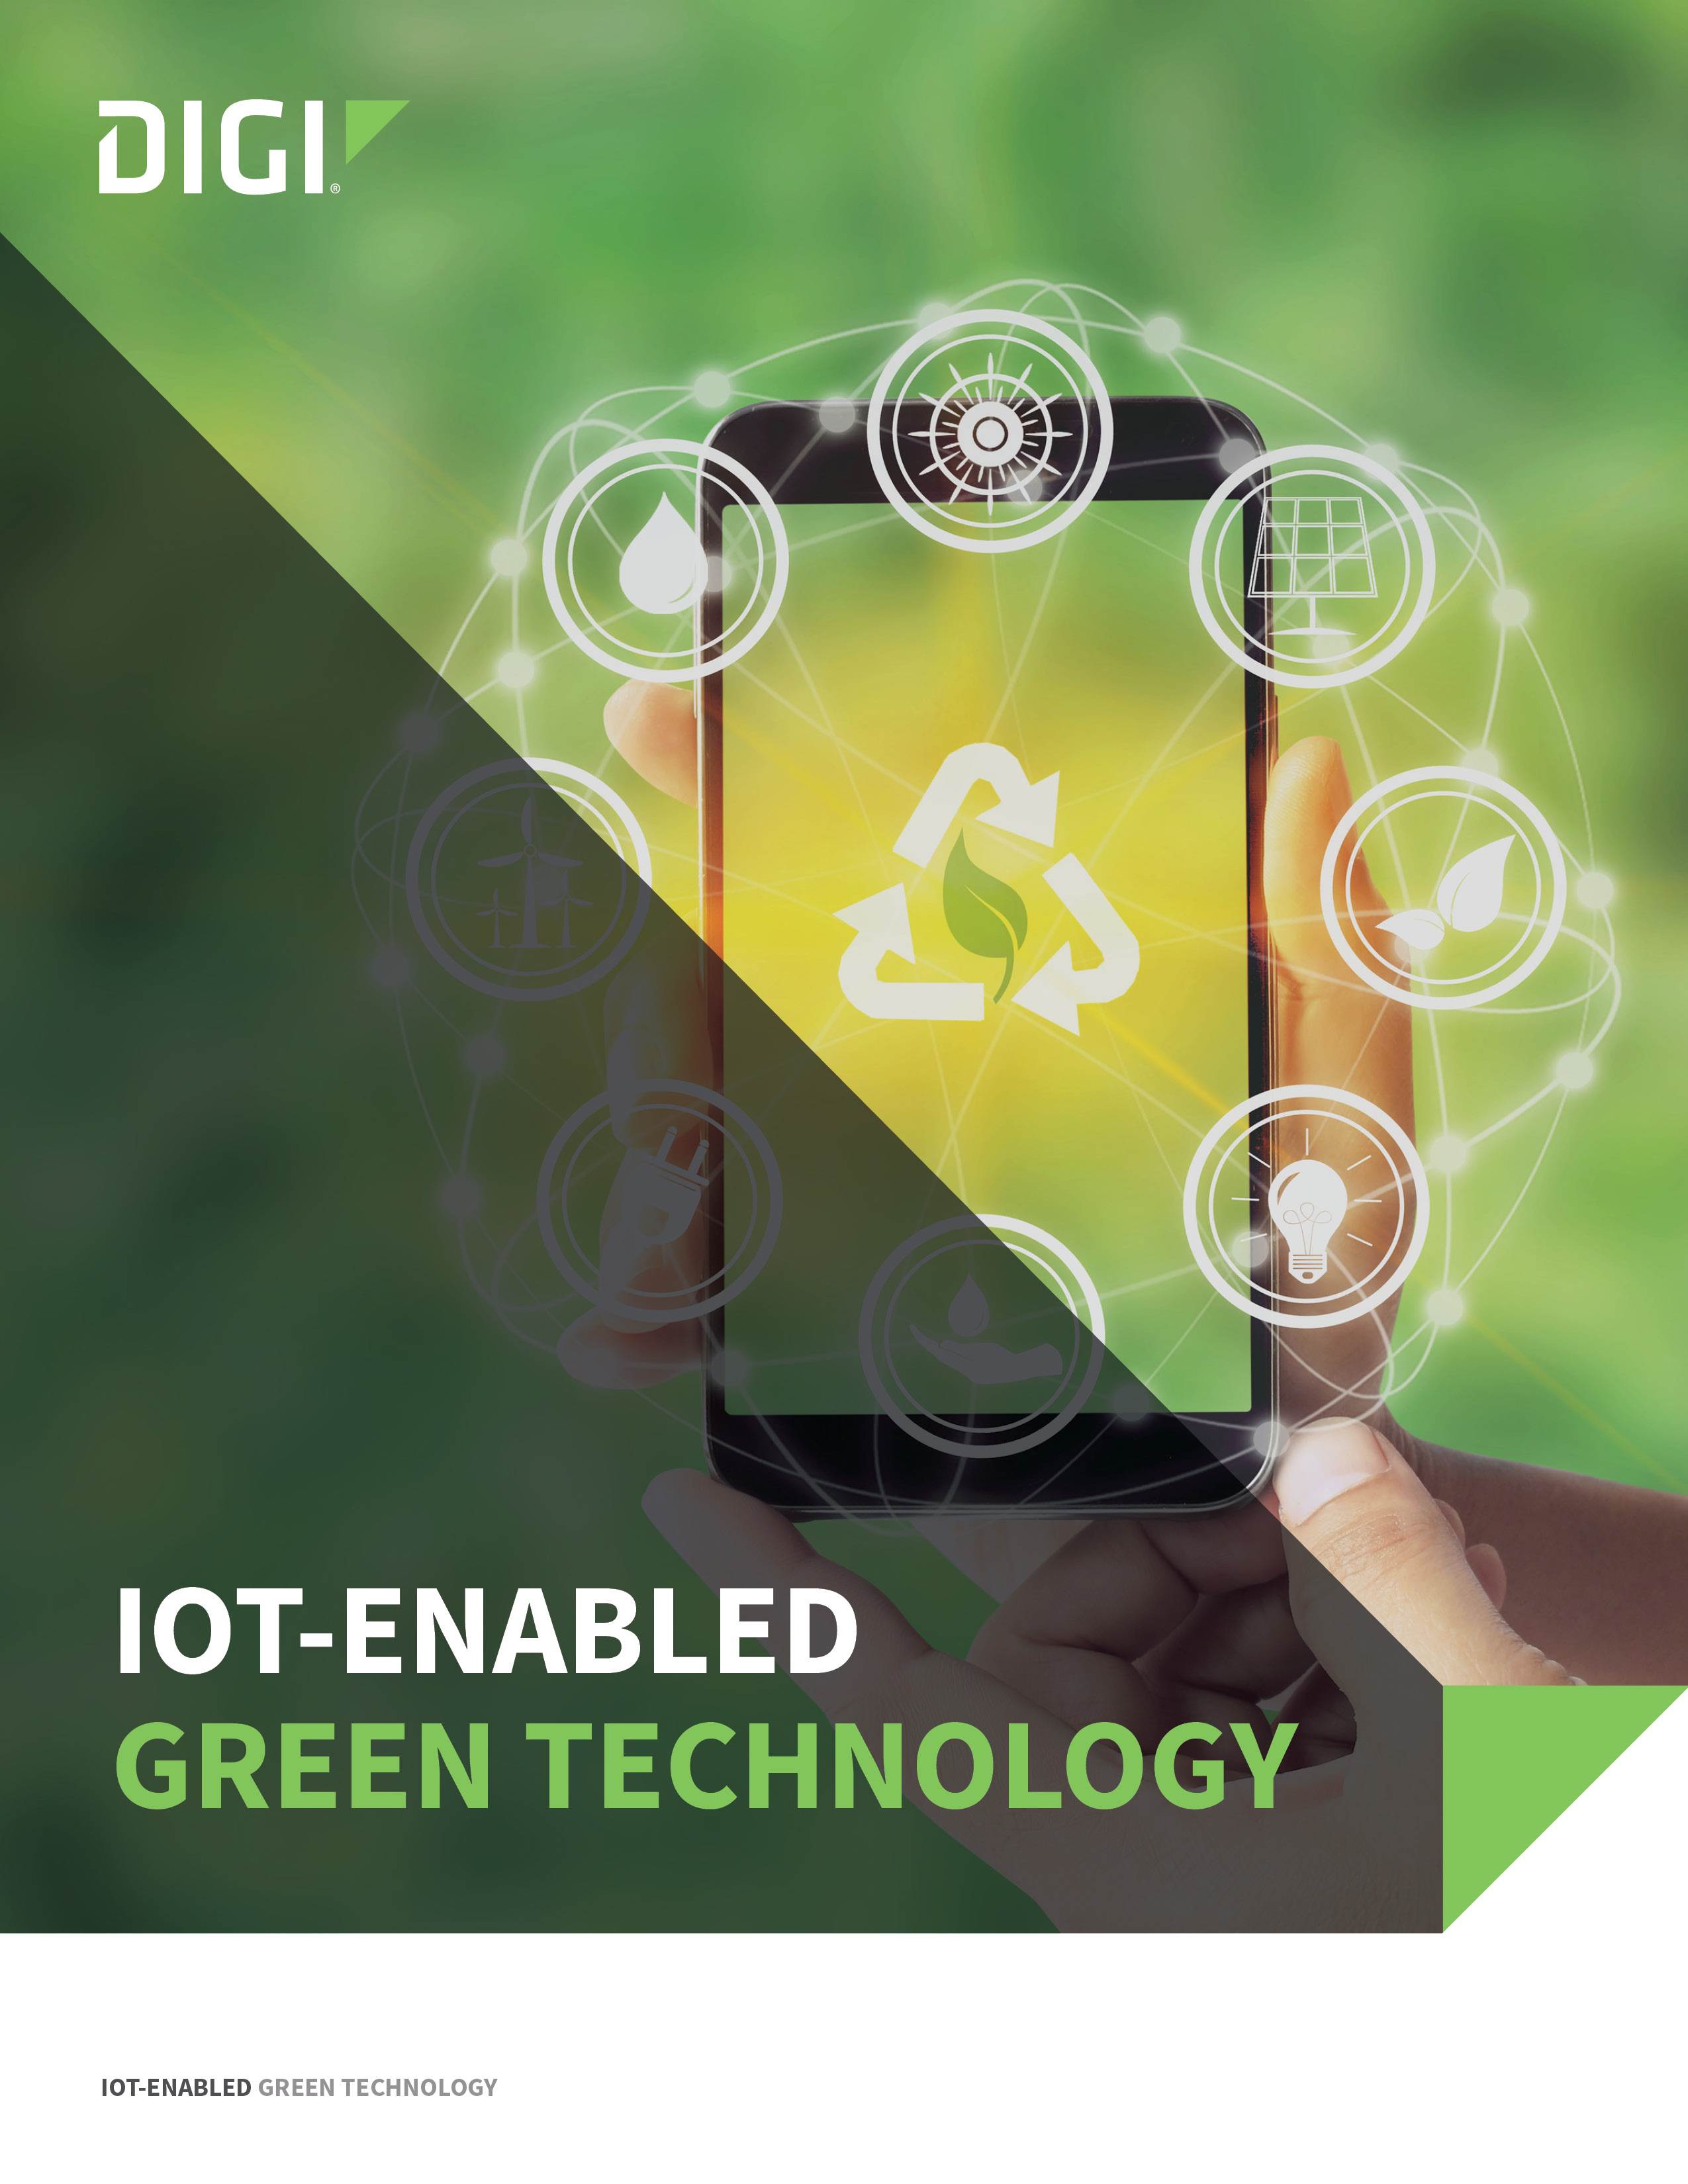 IoT-Deckblatt "Aktivierte grüne Technologie